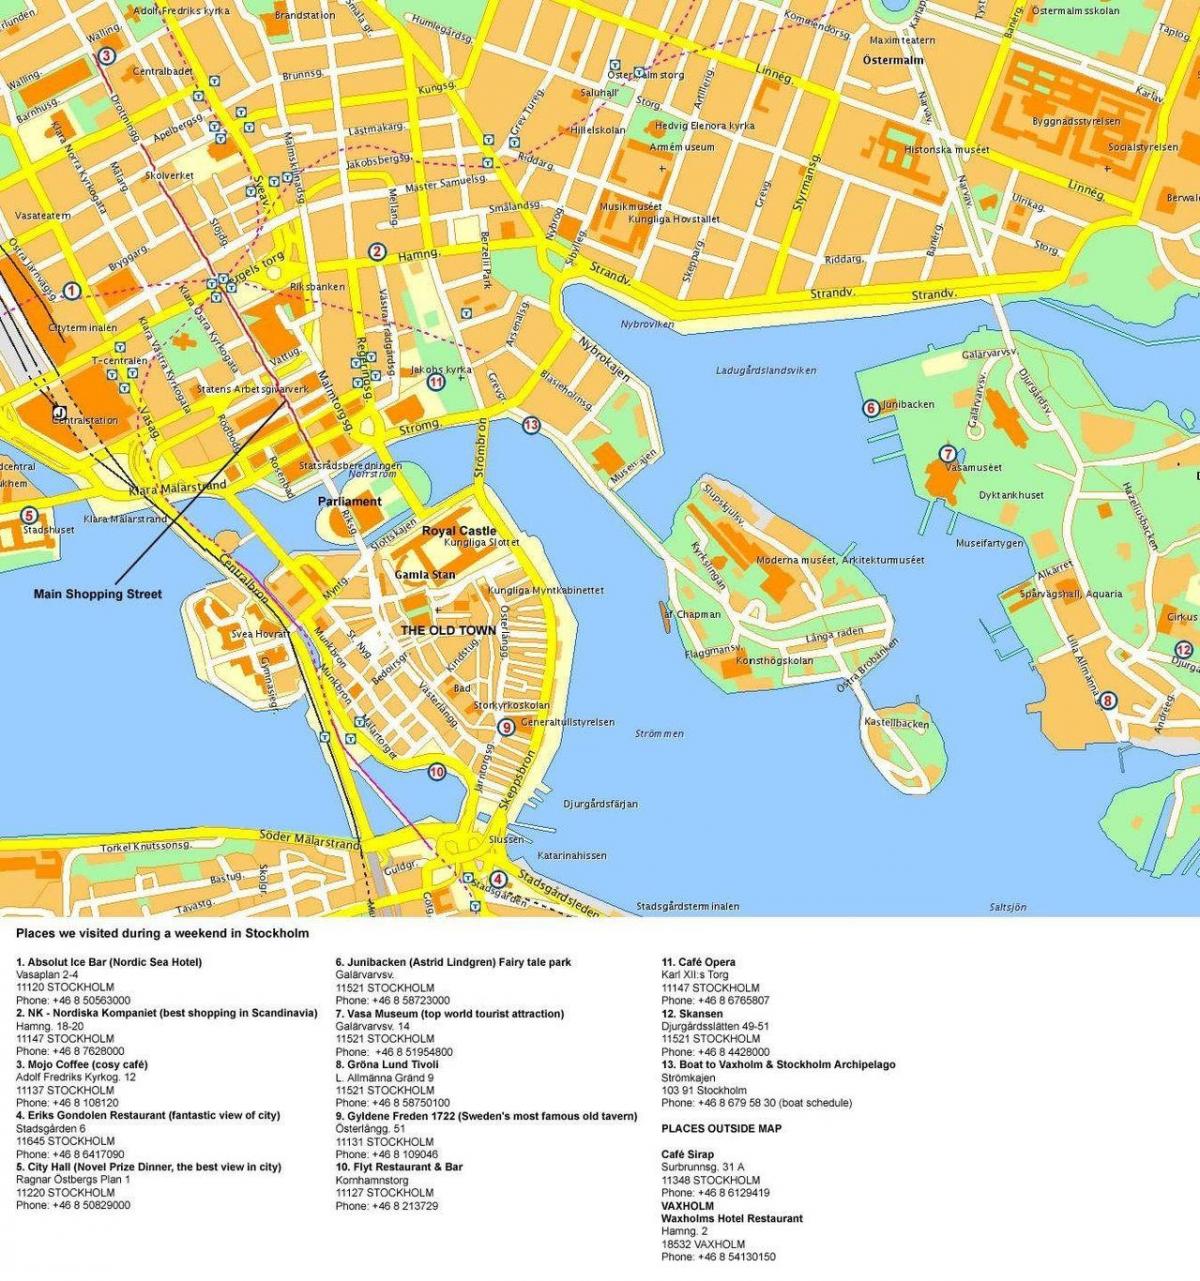 térkép Stockholm cruise terminal